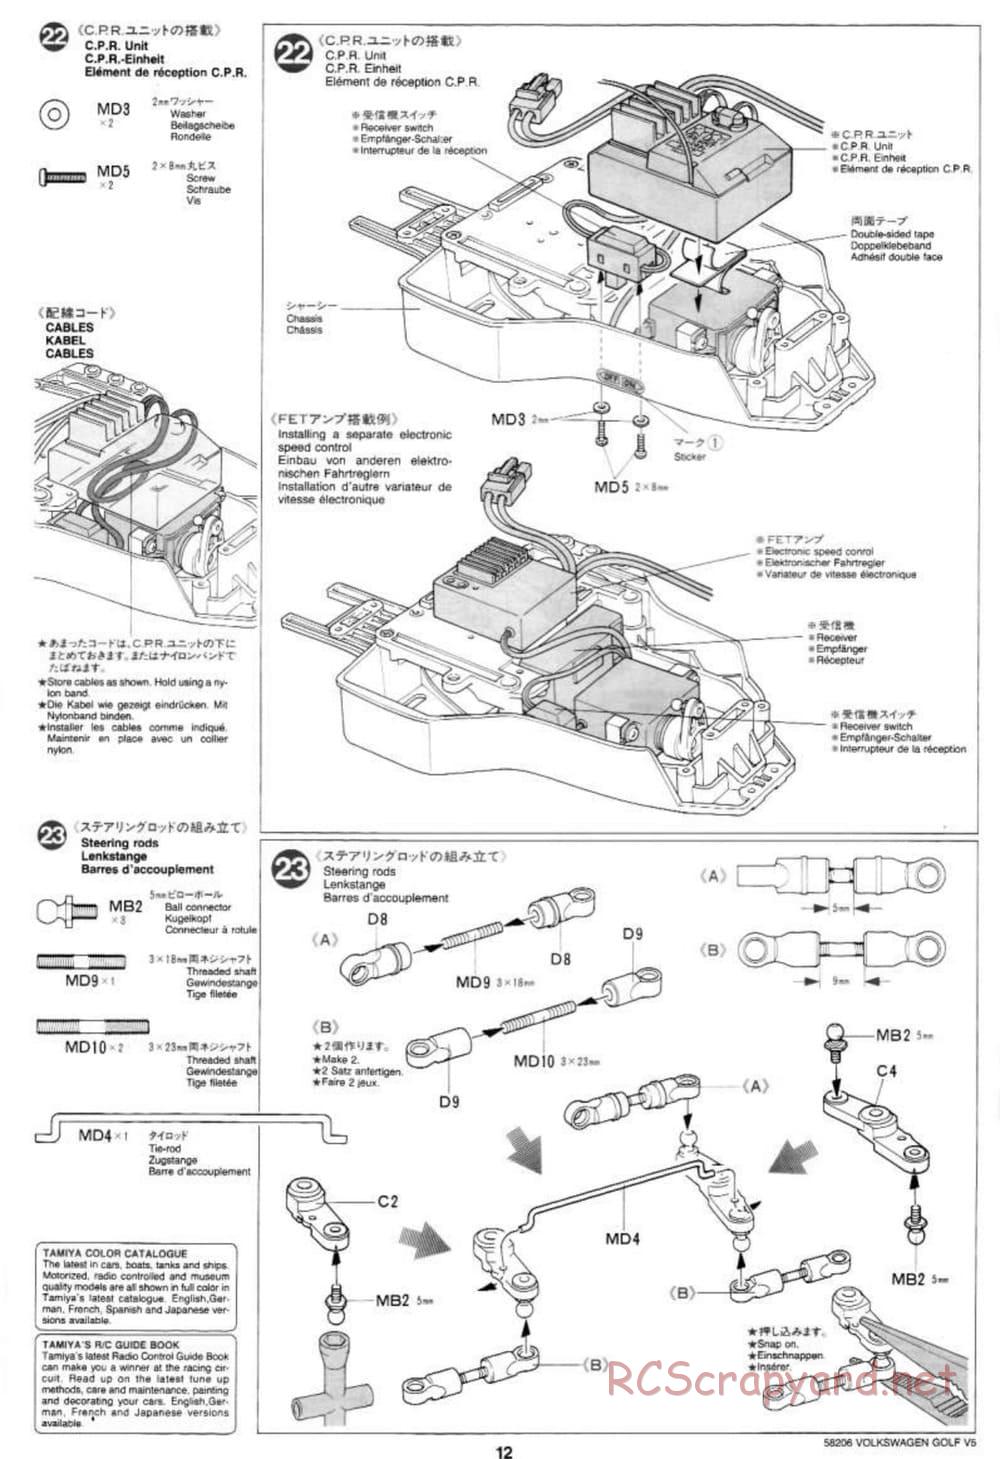 Tamiya - Volkswagen Golf V5 - FF-01 Chassis - Manual - Page 12